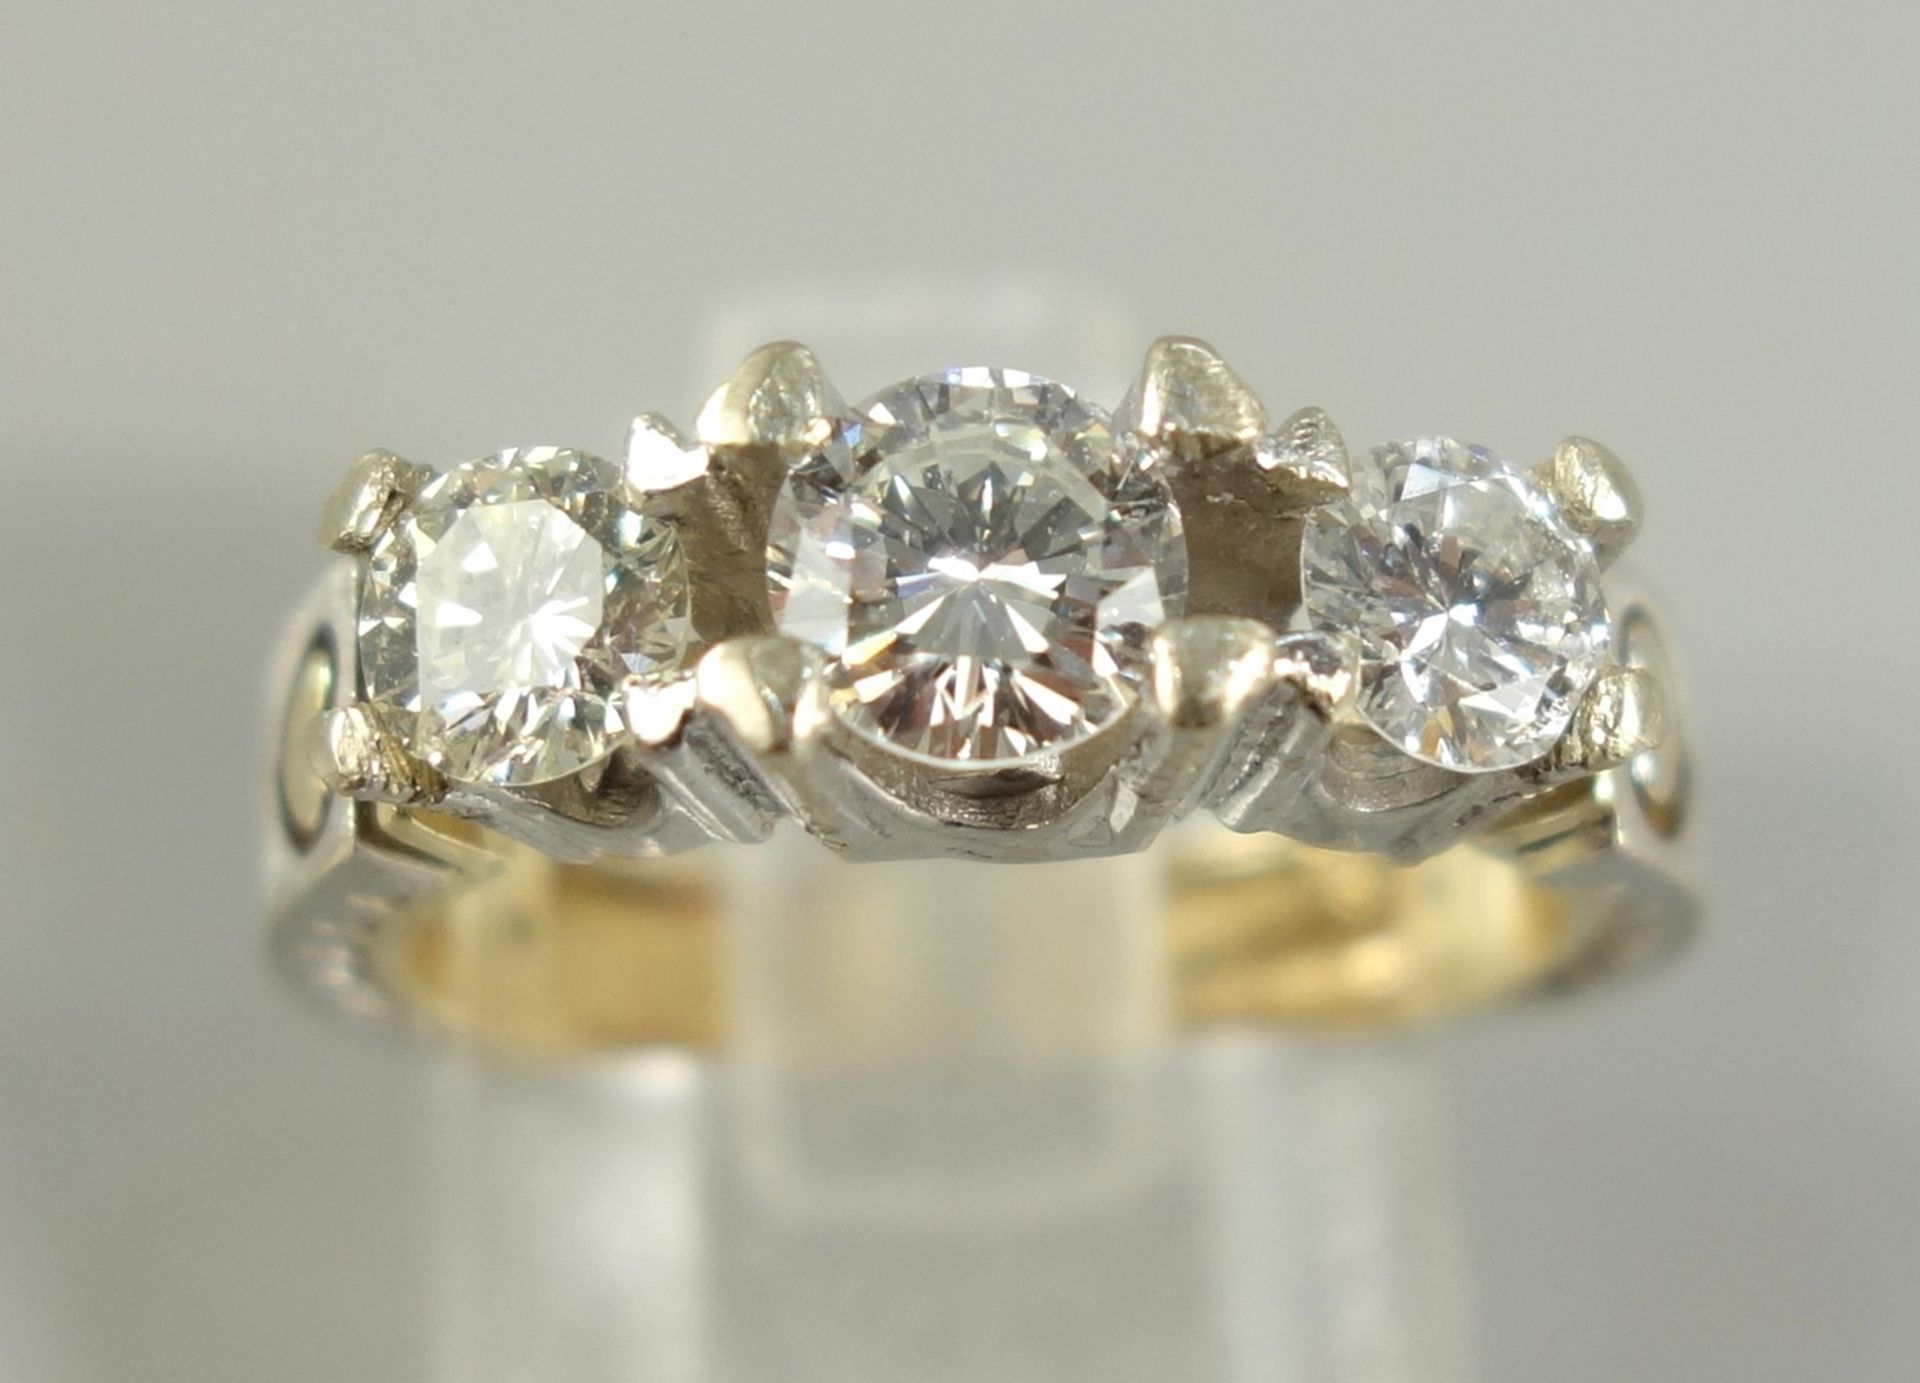 Brillant-Ring, 585er Gold, Gew.4,40g, U.51, 3 Brillanten, nebeneinander in Krappenfassung, total